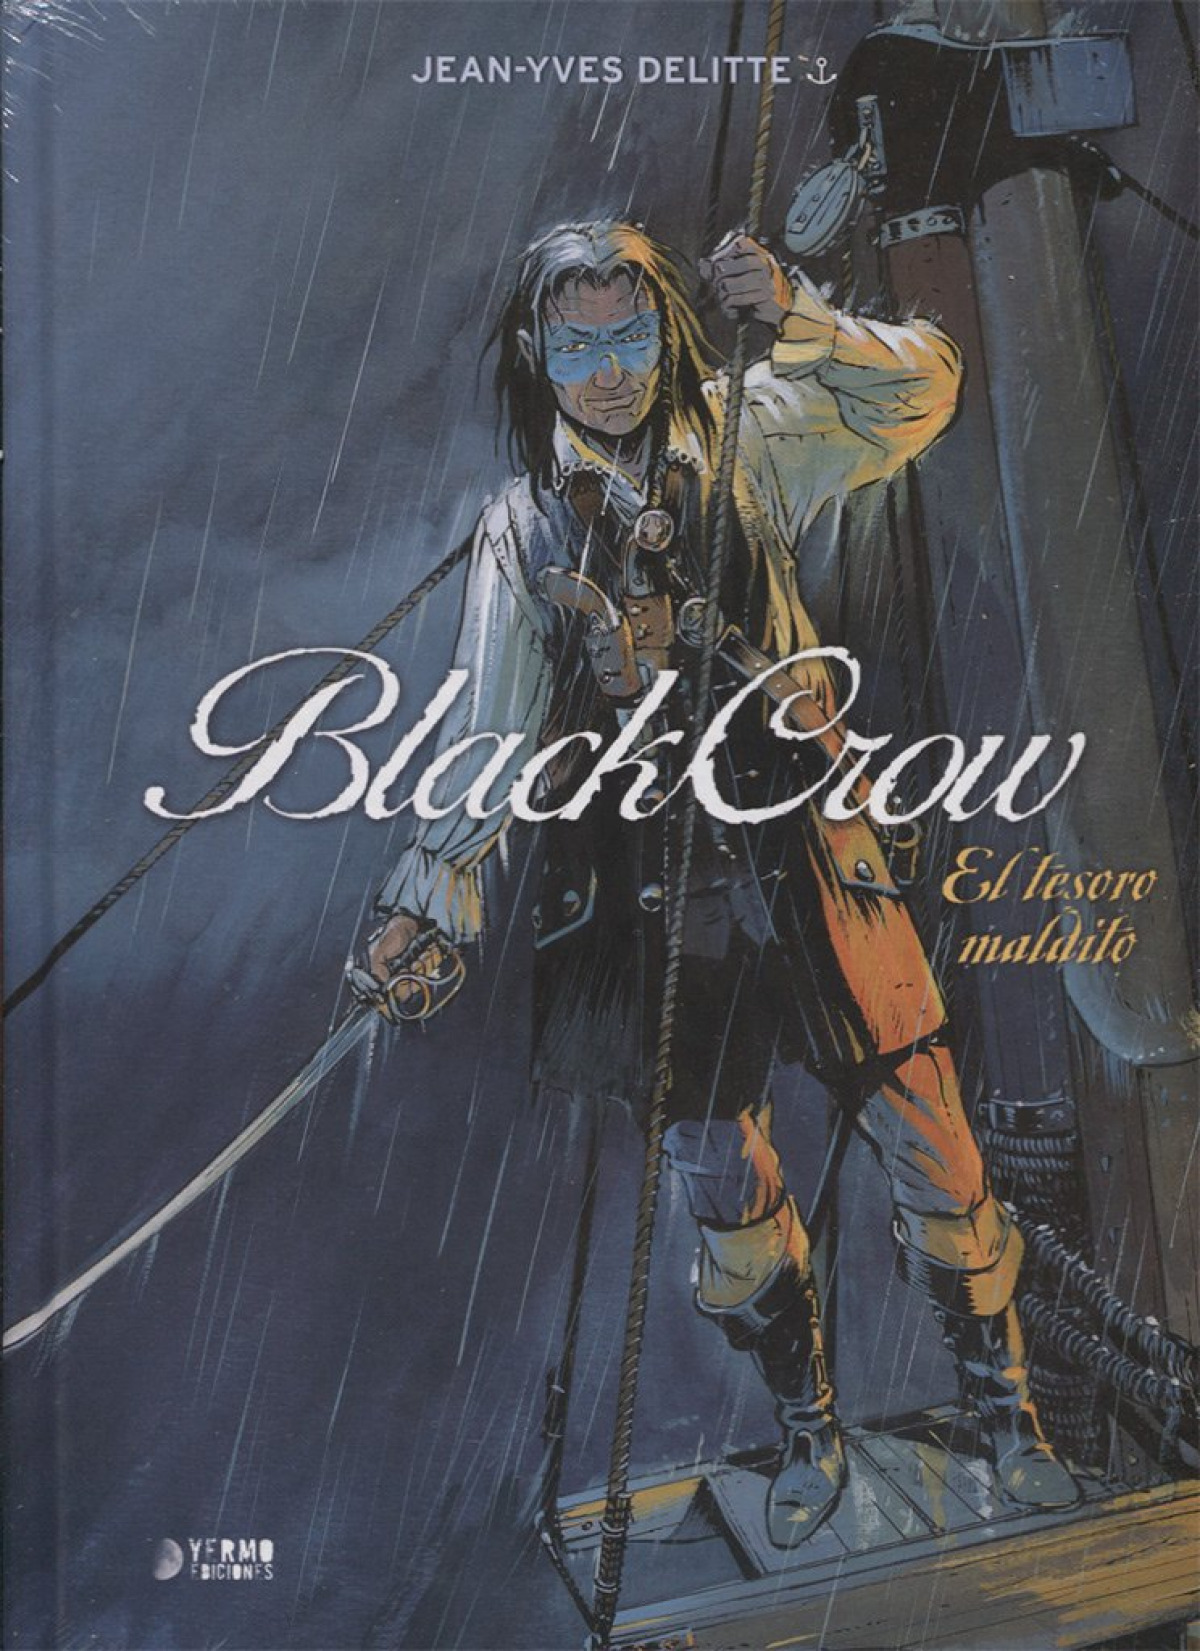 El tesoro maldito blackcrow - Delitte, Jean